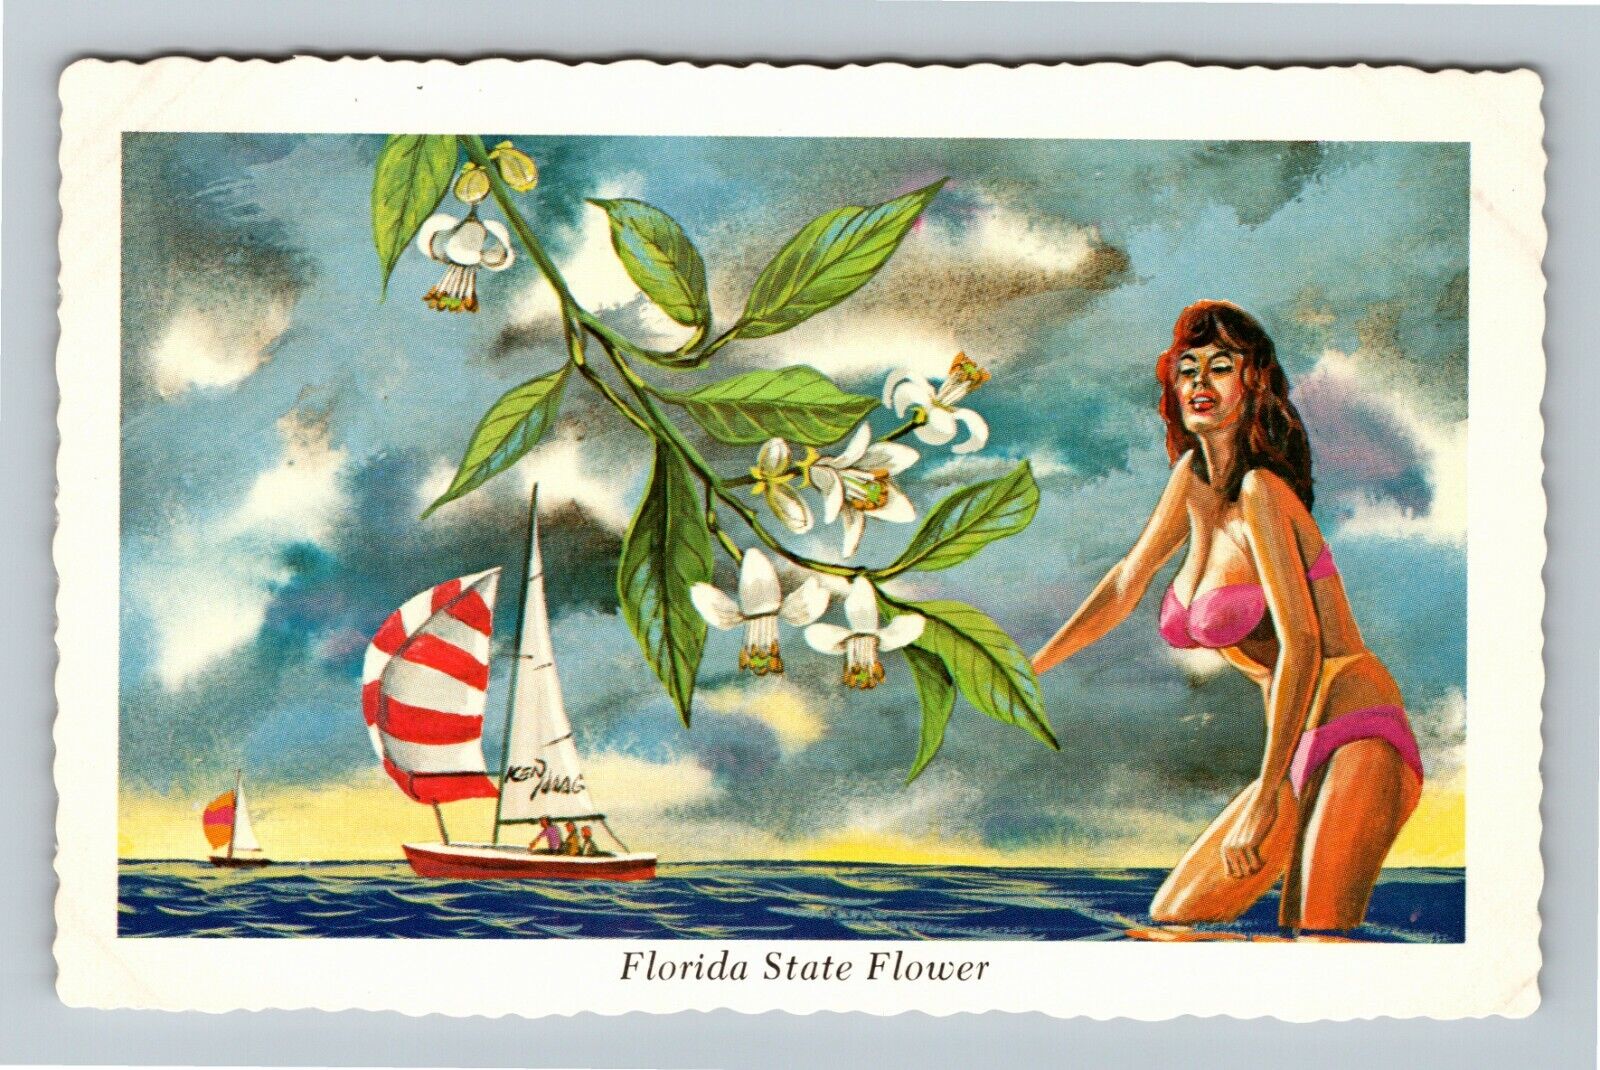 FL-Florida, State Flower Orange Blossom, Sail Boat Vintage Souvenir Postcard